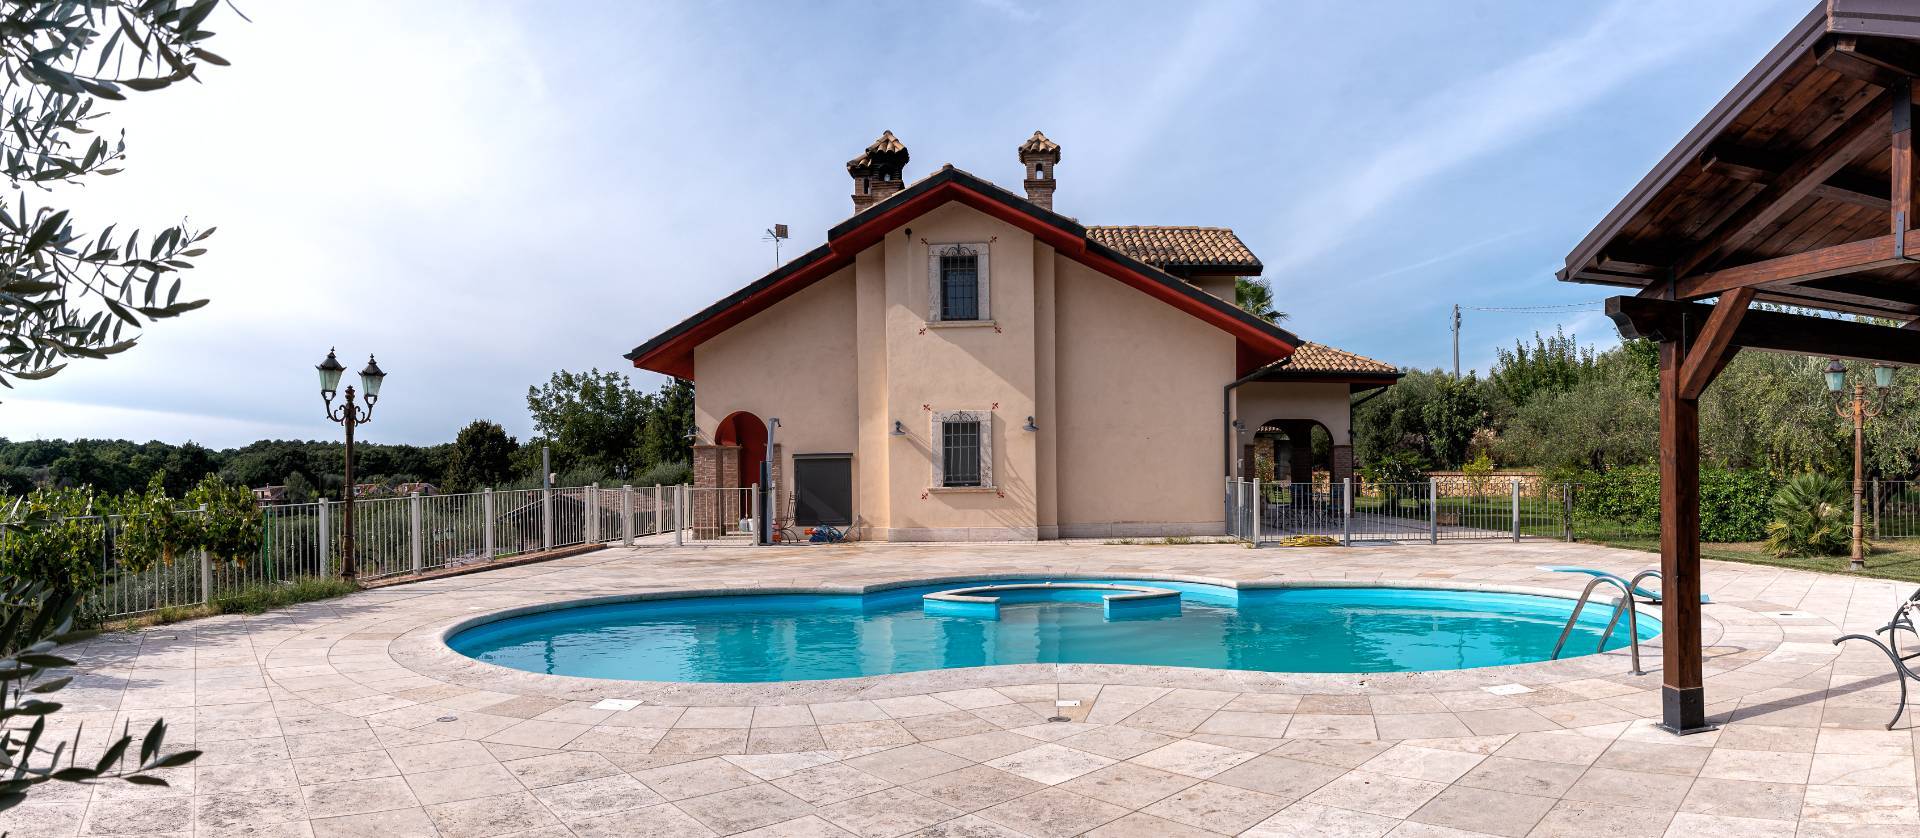 Villa in vendita a Sant'Angelo Romano, 10 locali, prezzo € 850.000 | CambioCasa.it